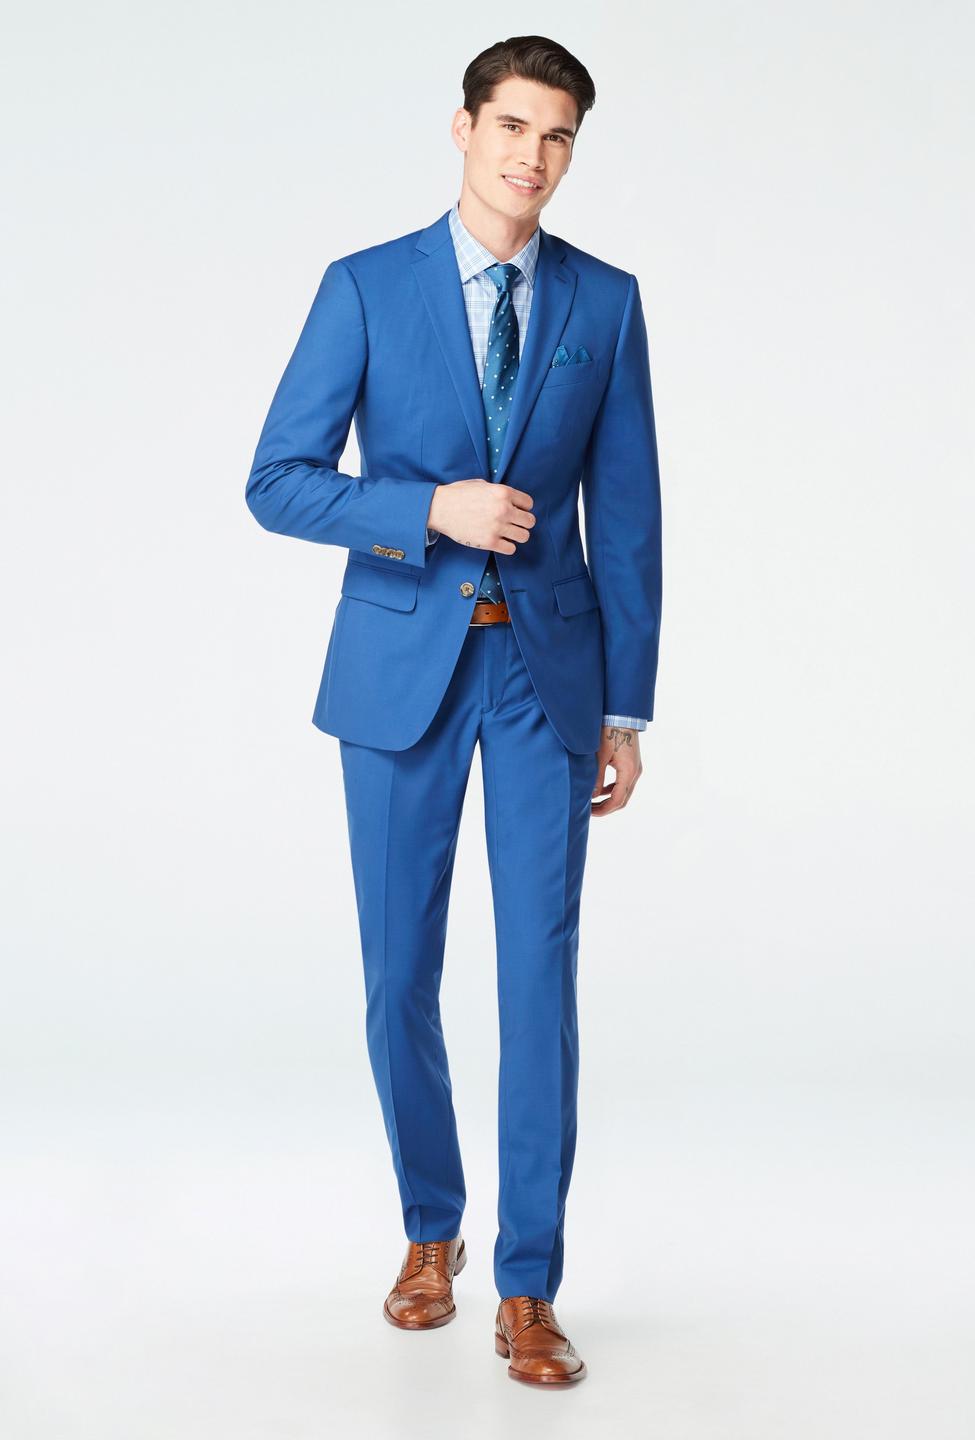 Chatham Deep Blue Suit